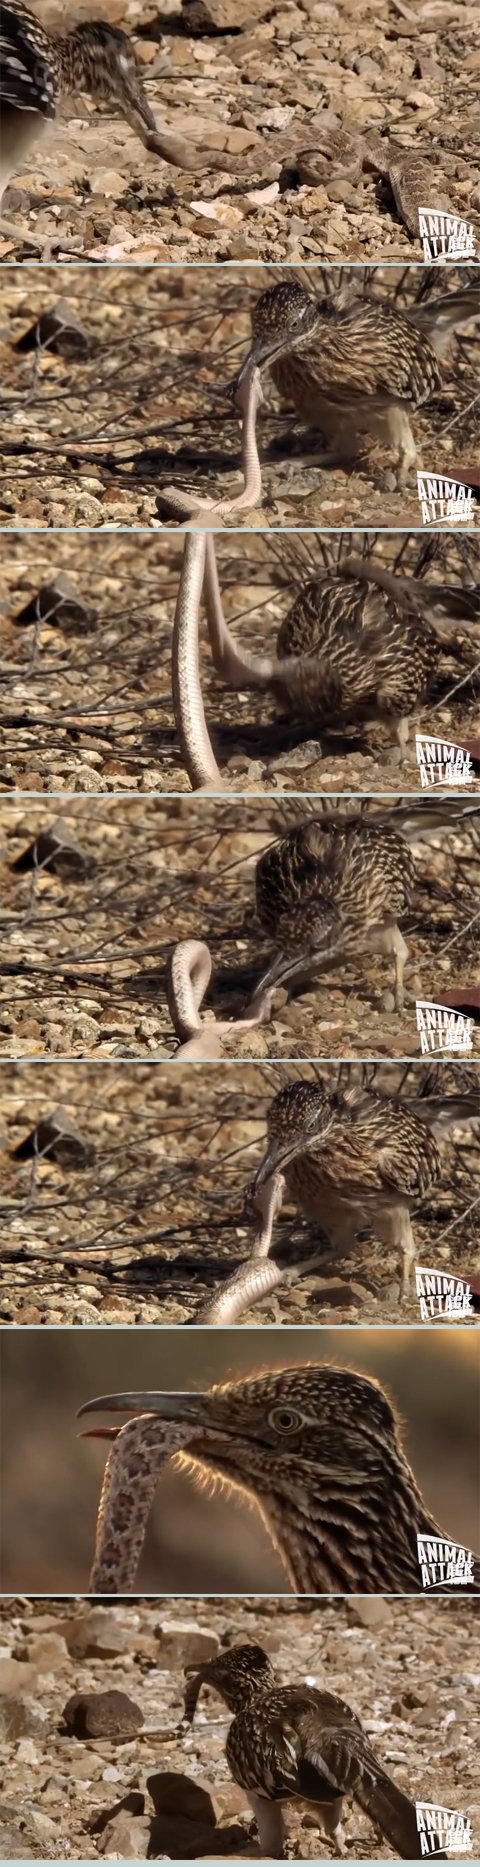 방울뱀 바닥에 몇 번 패대기 치는 로드러너 사진출처: 유튜브 영상 캡처